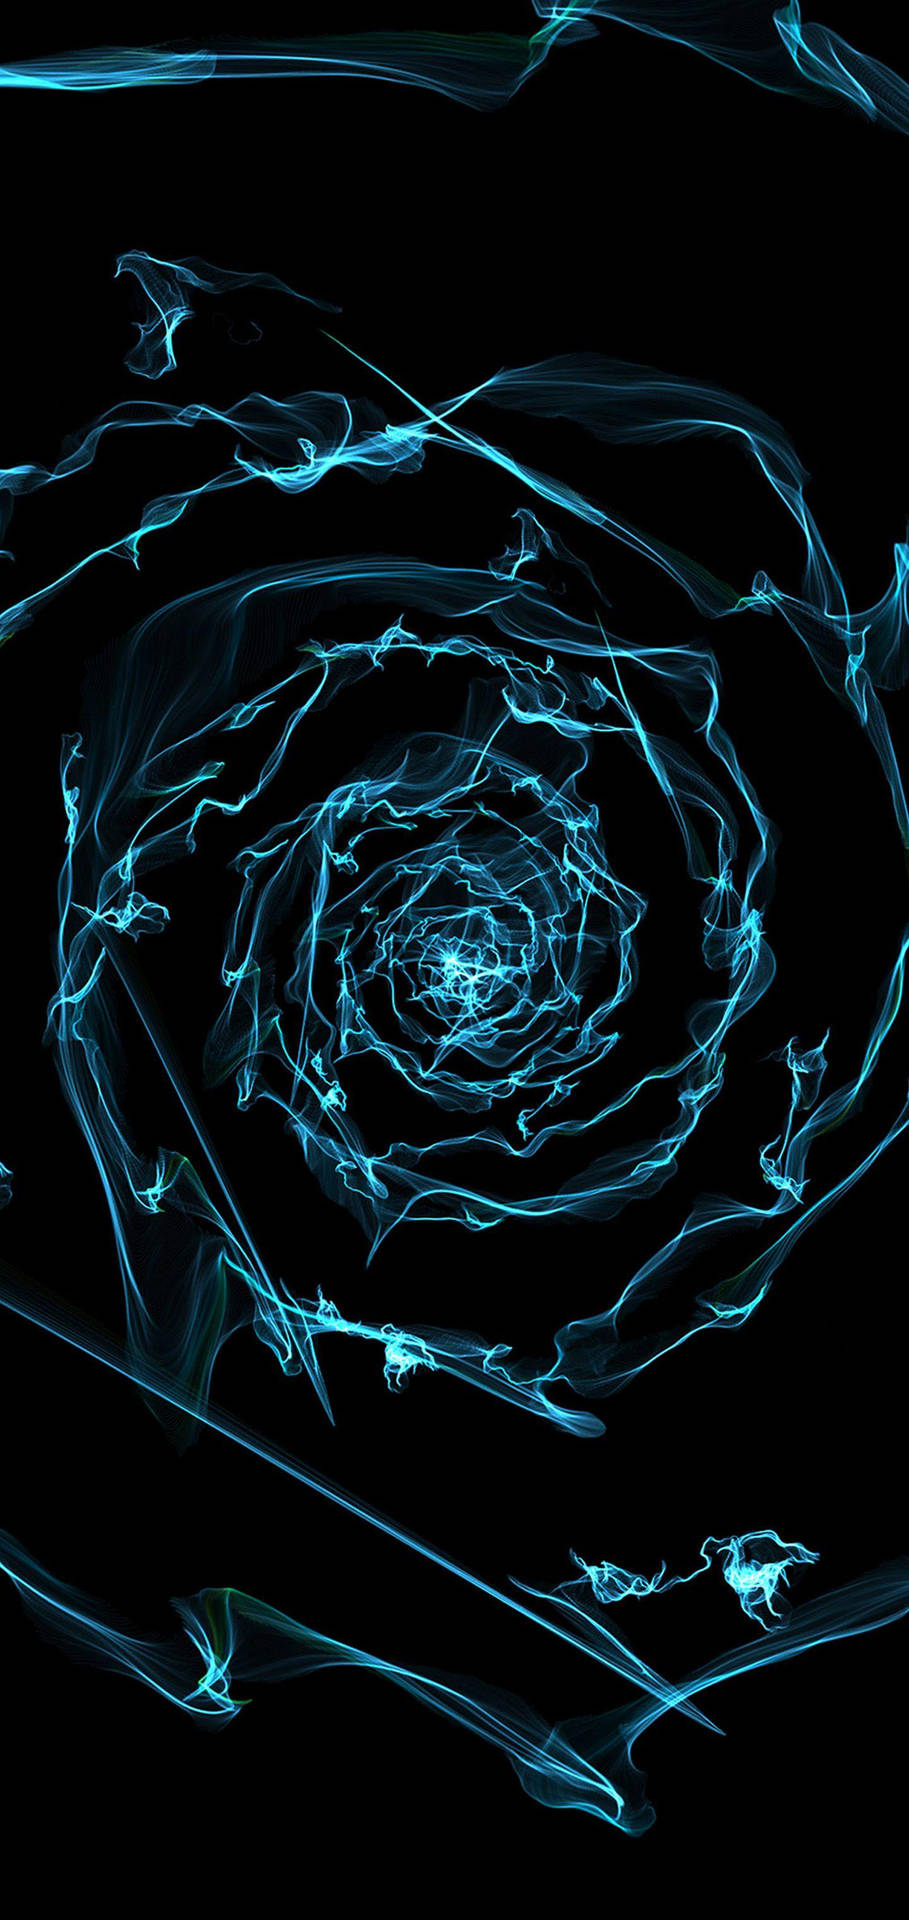 Espiralgalaxy S10 Abstracto. Fondo de pantalla